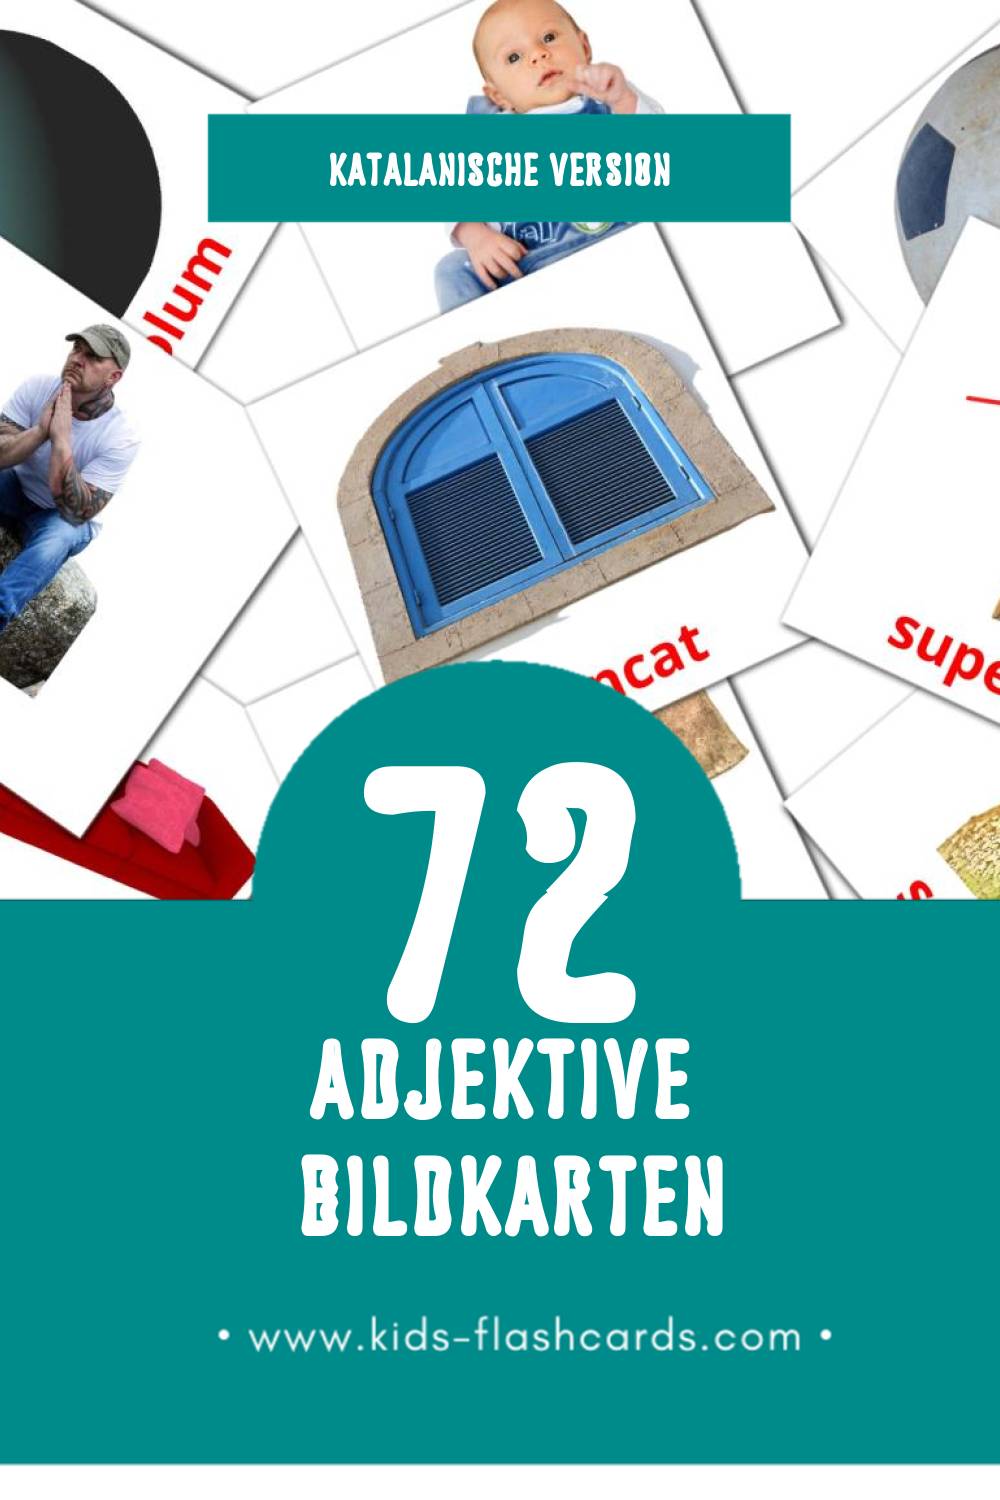 Visual Adjectius Flashcards für Kleinkinder (72 Karten in Katalanisch)